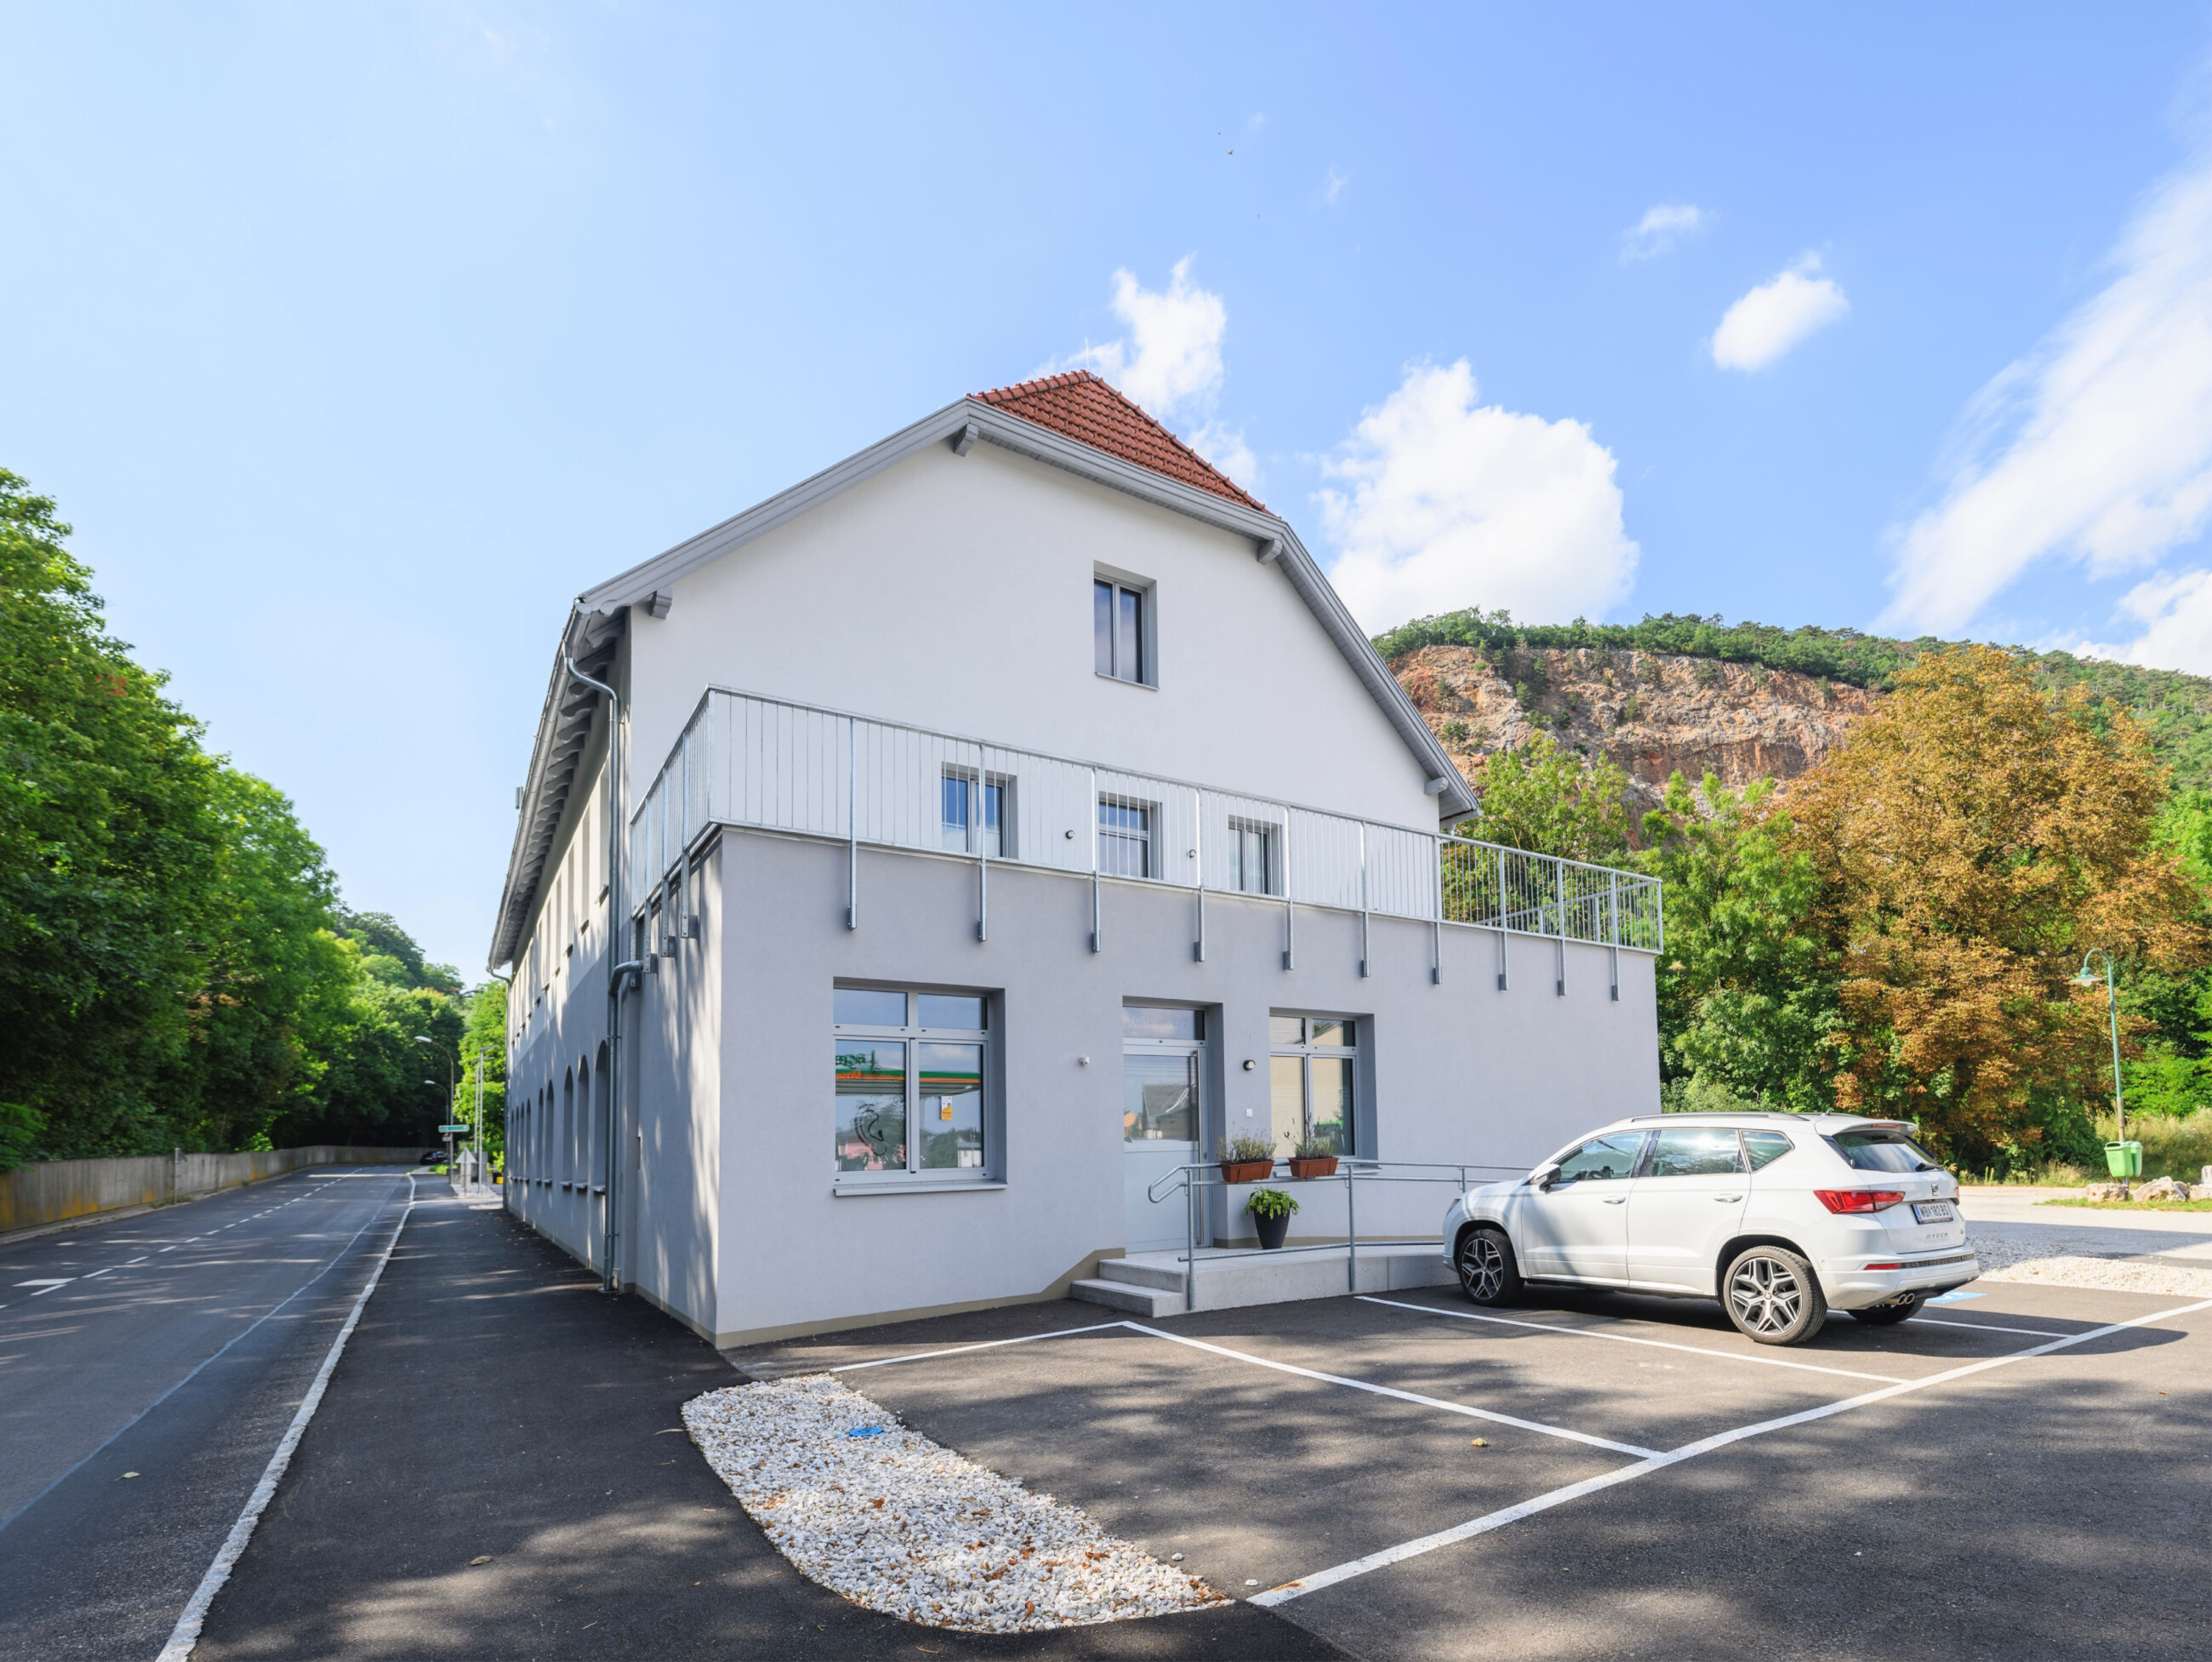 Sanierung Gesundheitszentrum Niederösterreich THON Generalunternehmer